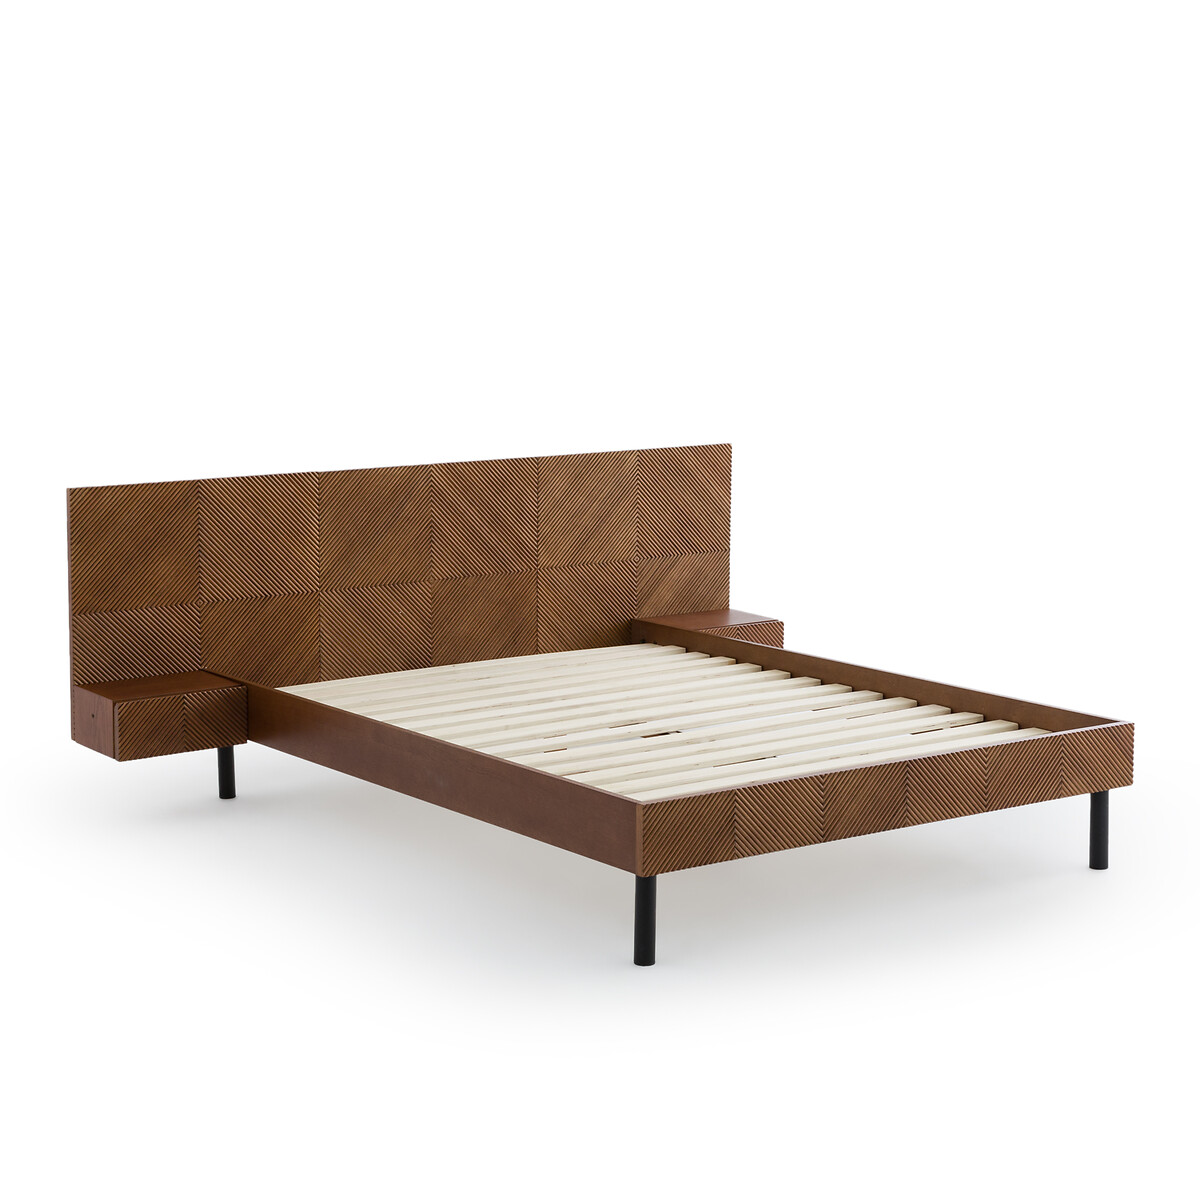 Кровать Со встроенными изголовьями и кроватным основанием Jrem 160 x 200 см каштановый LaRedoute, размер 160 x 200 см - фото 3